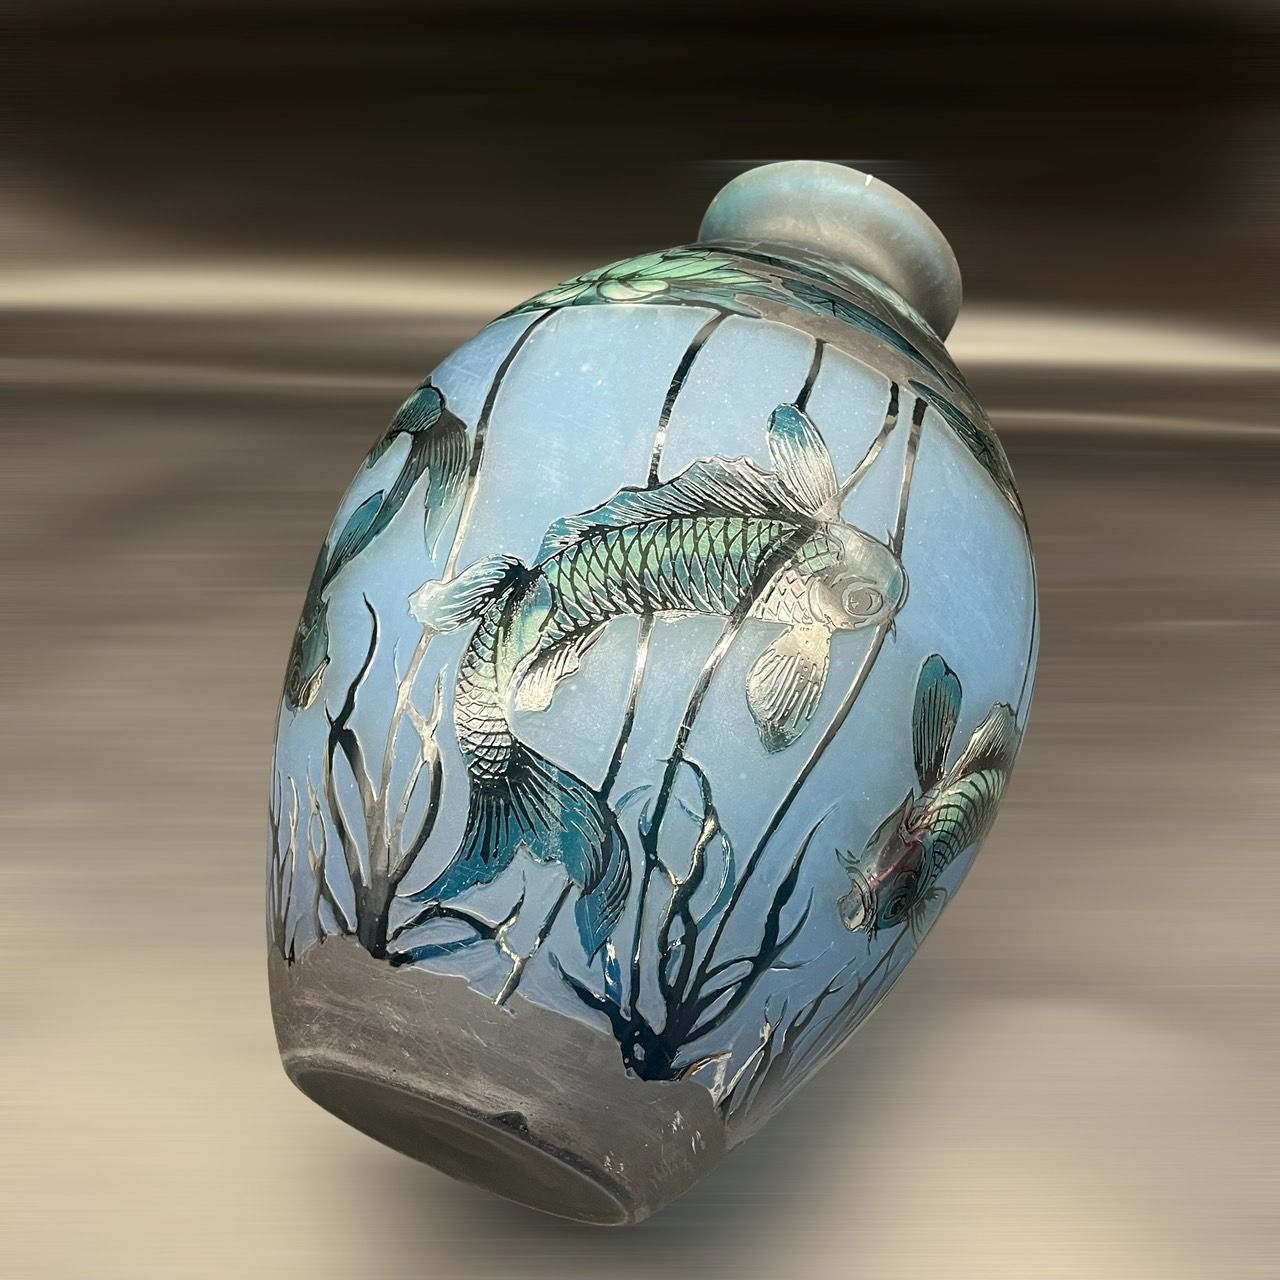 証明書】 エミールガレ 花瓶 カメオ彫り 被せガラス 高さ27ｃｍ - 美術 